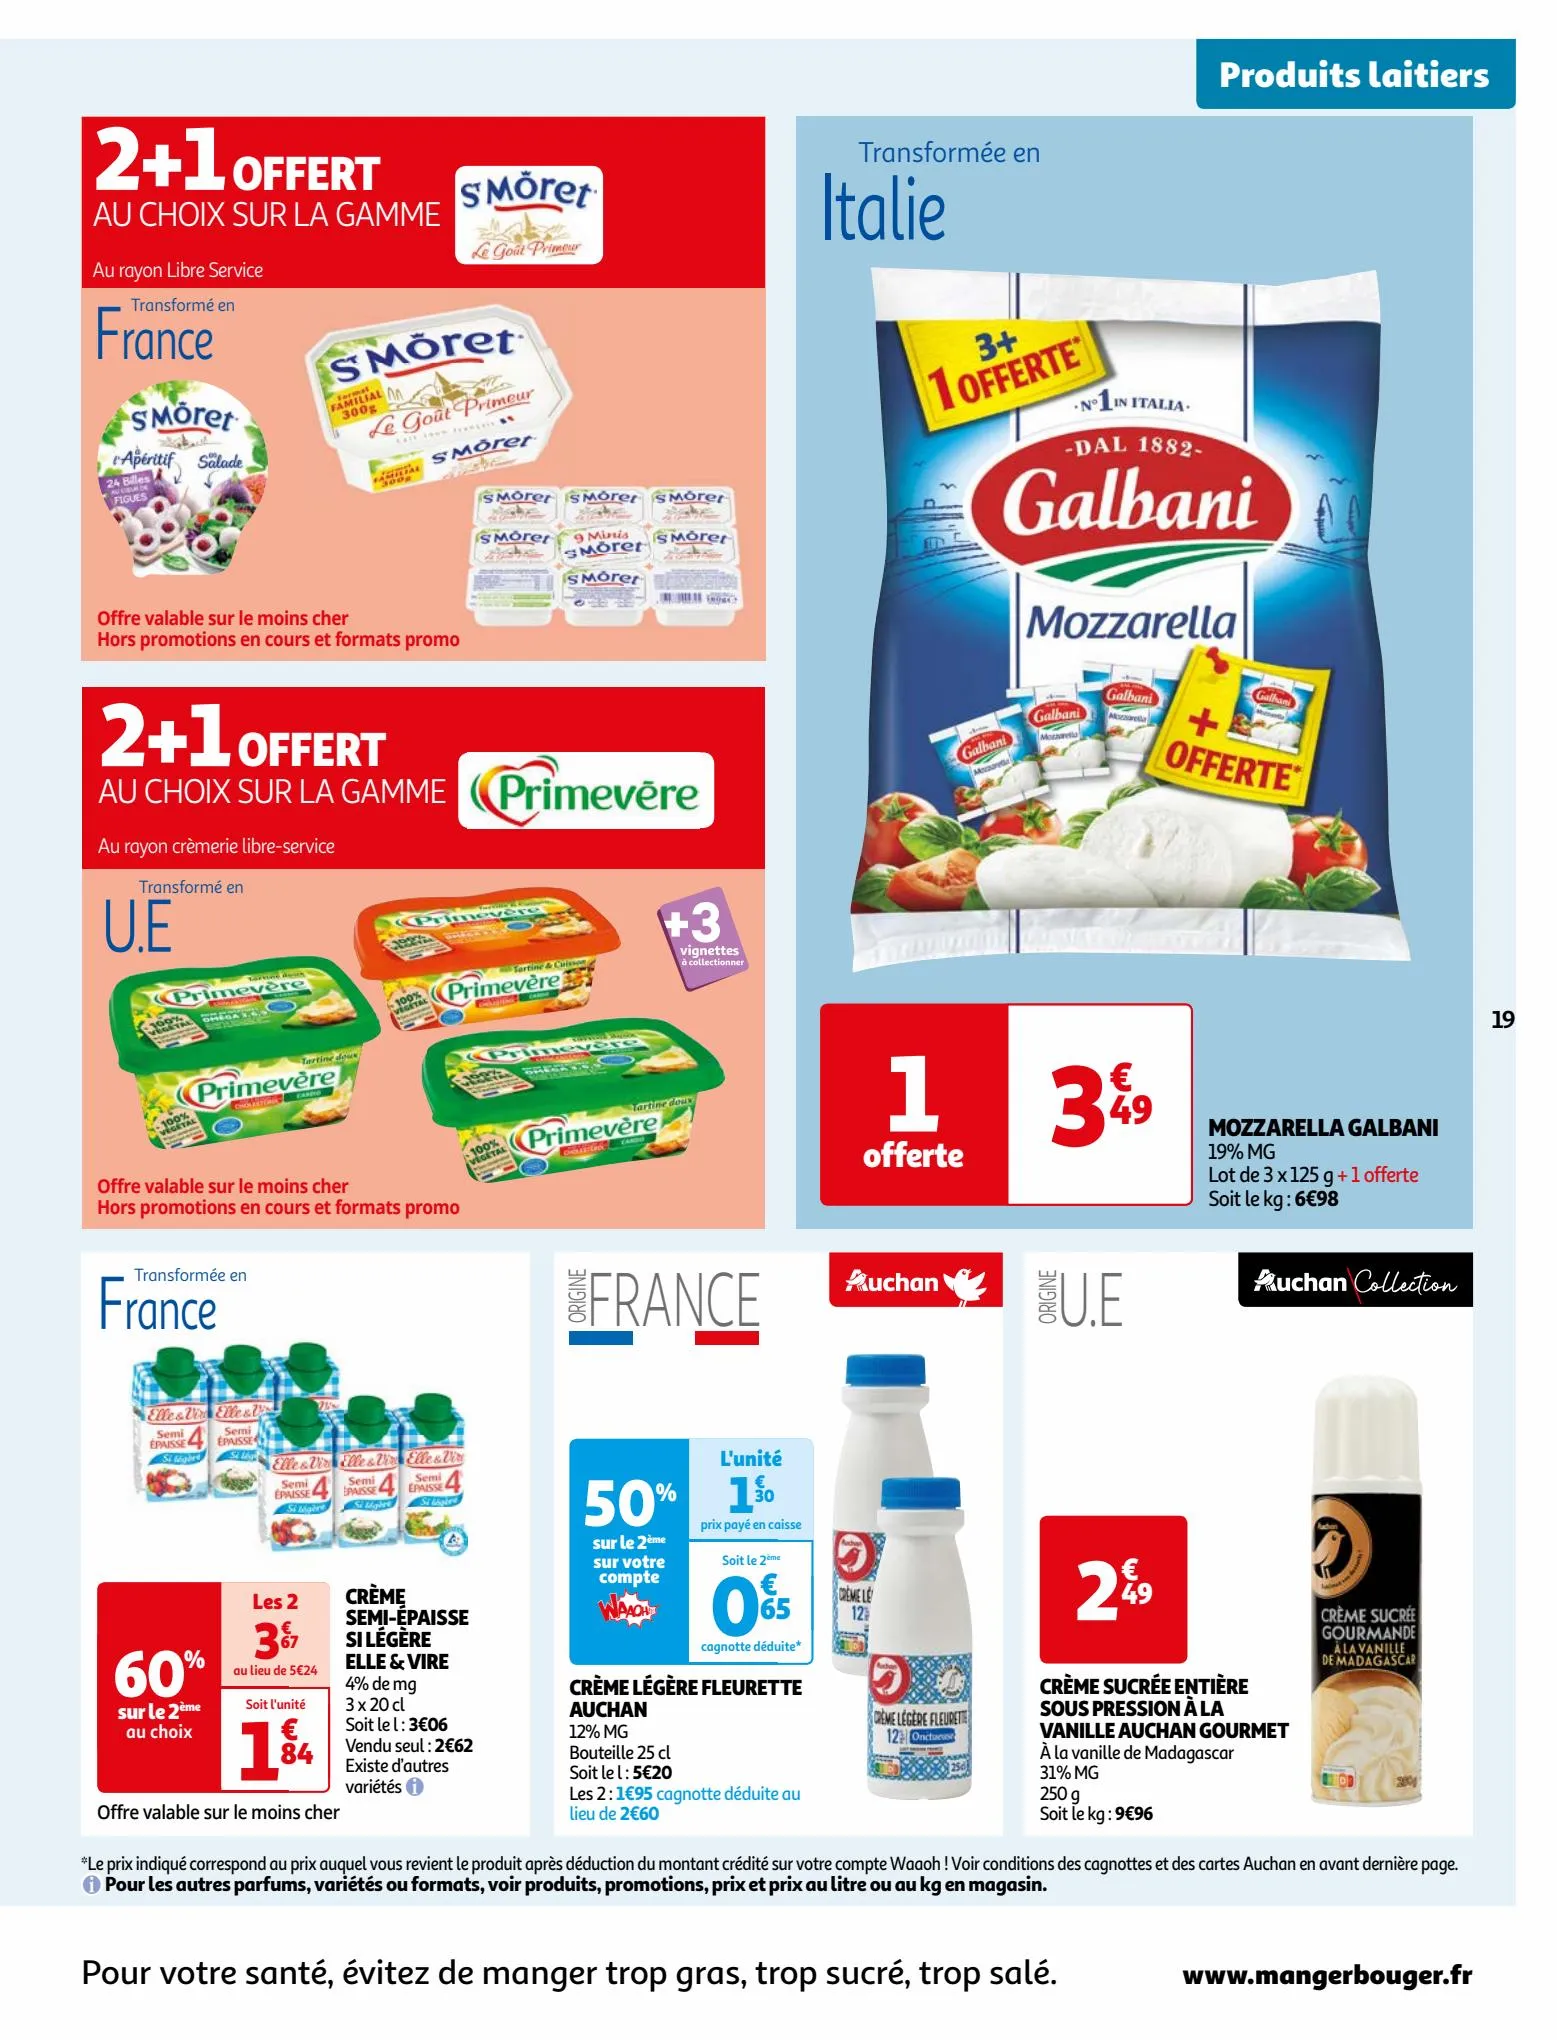 Catalogue Vos produits laitiers à petits prix !, page 00019